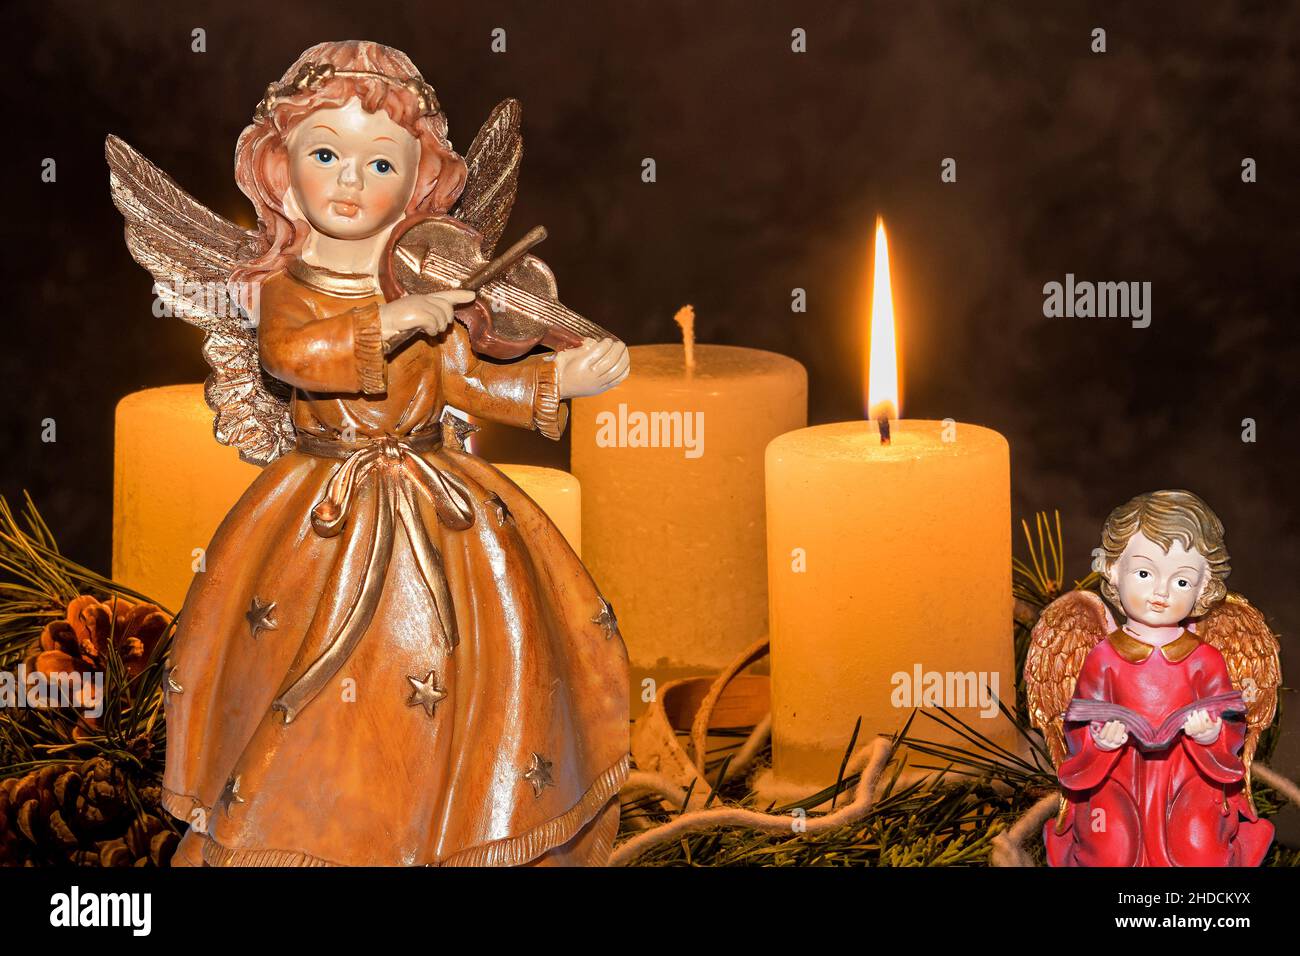 Ein Adventskranz zu Weihnachten sorgt für romatinsche Stimmung in der stillen Advent Zeit, 1. Advent, drei brennende Kerzen, Engel, Weihnachtsengel mi Stock Photo